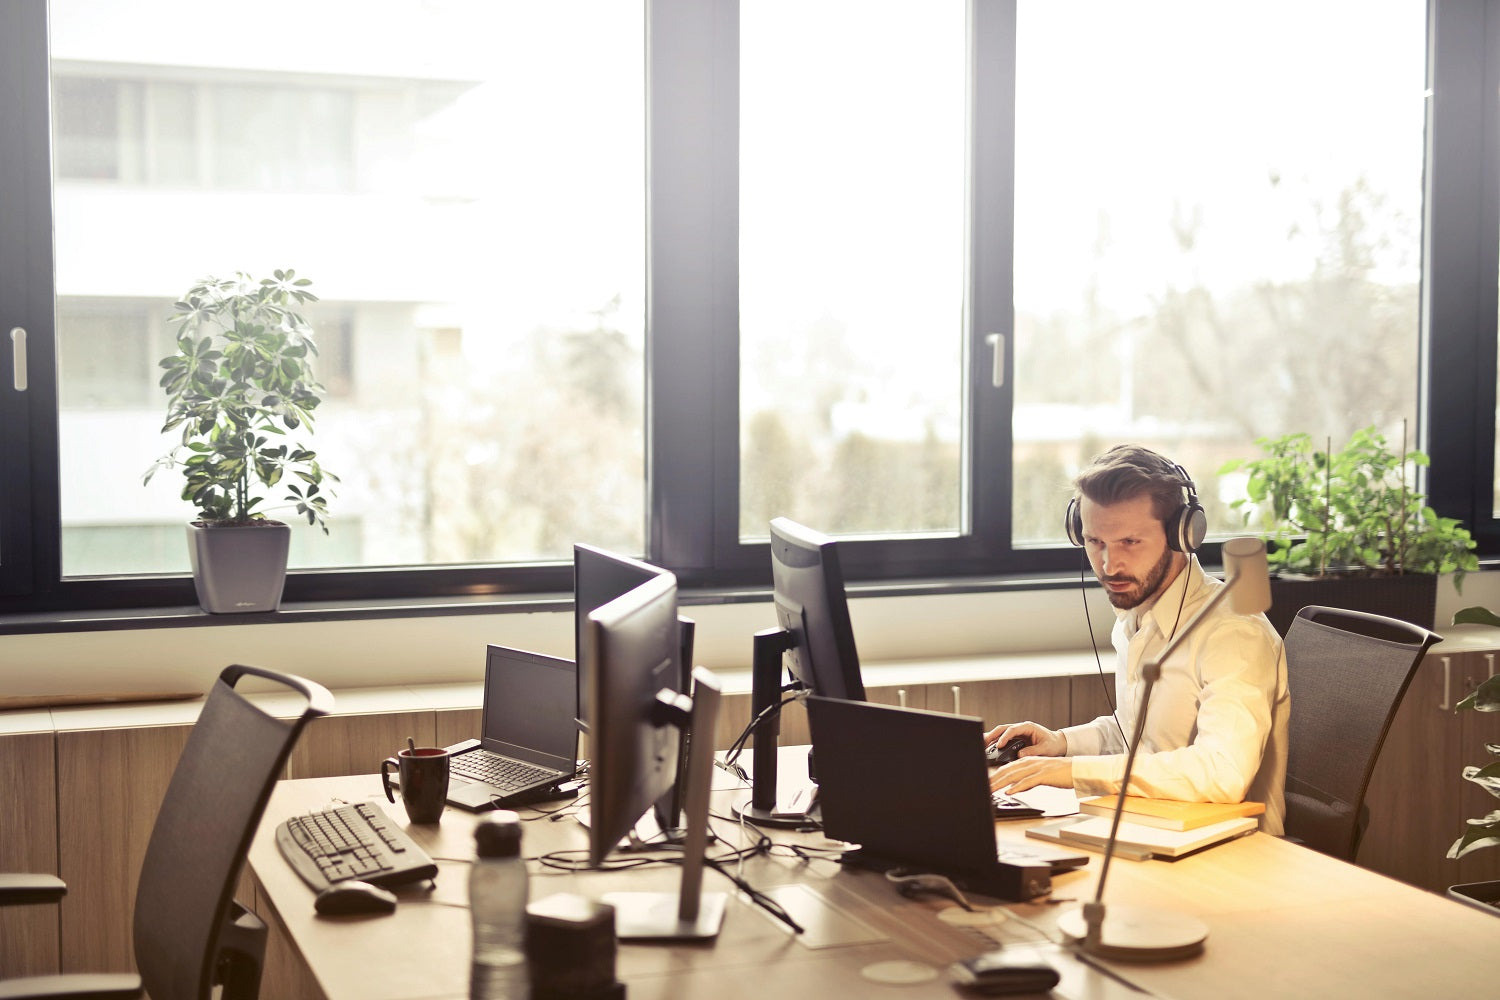 Das Foto zeigt einen Mann, der in einem Büro am Schreibtisch sitzt und ein Headset trägt. Shop Pay ermöglicht es dir, deinen Kund:innen einen schnelleren Support zu bieten.